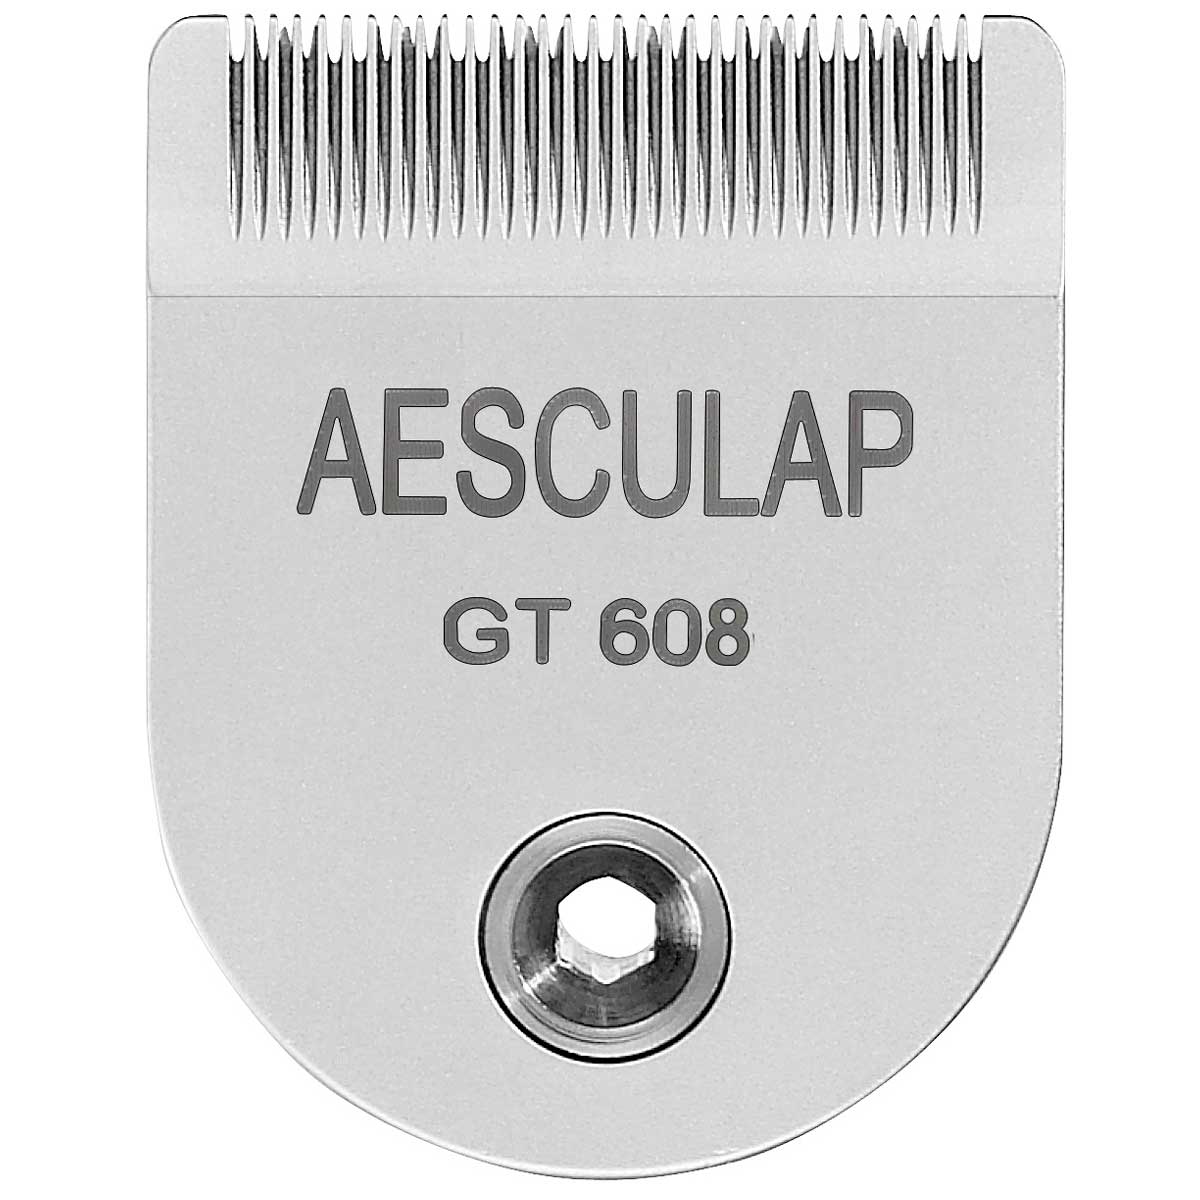 Tête de coupe Aesculap GT608 pour Exacta / Isis